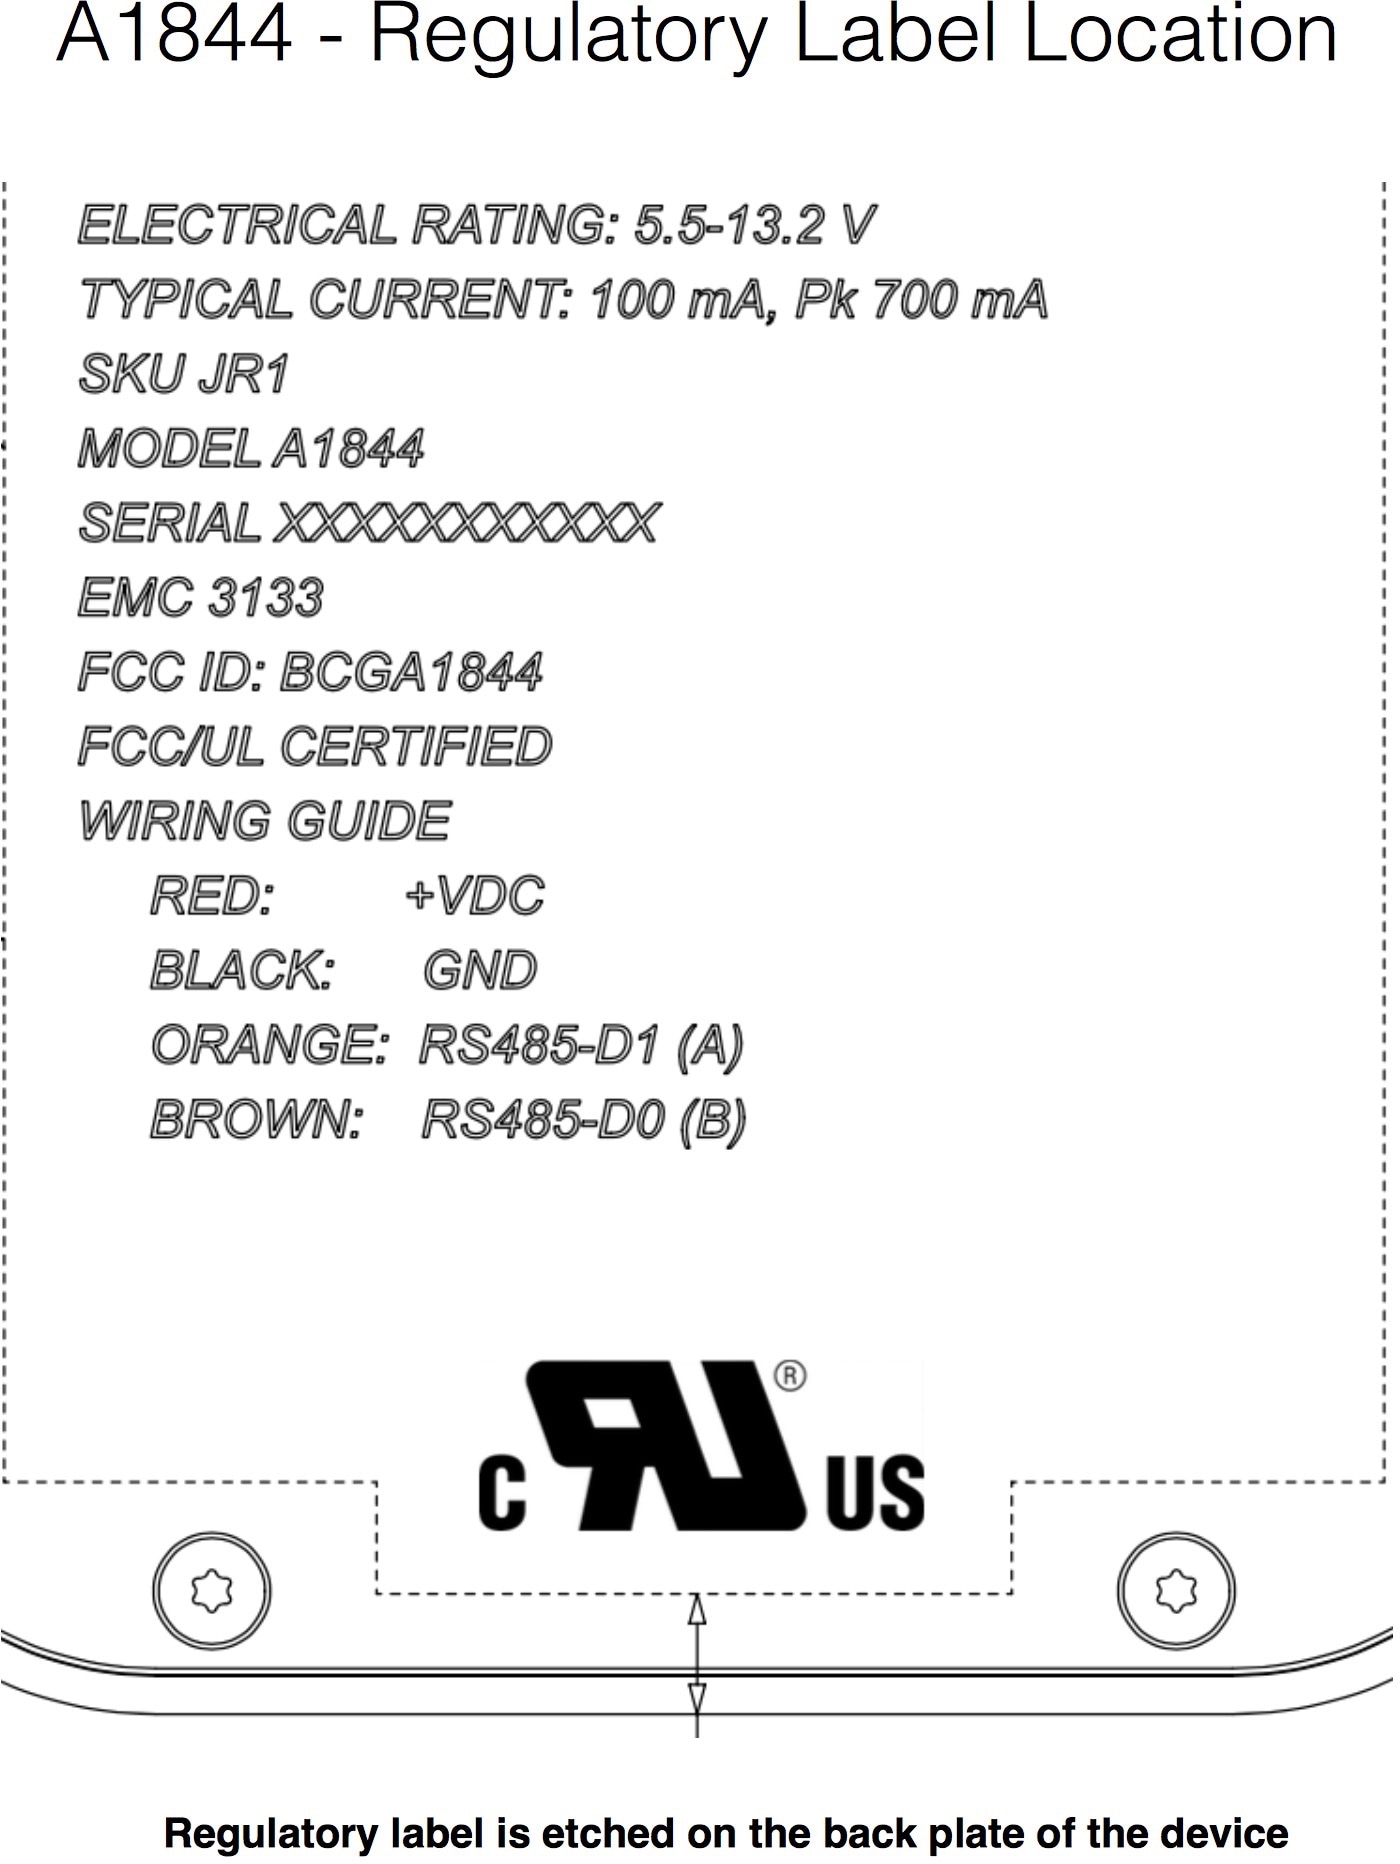 Documento do dispositivo A1844, testado pela FCC